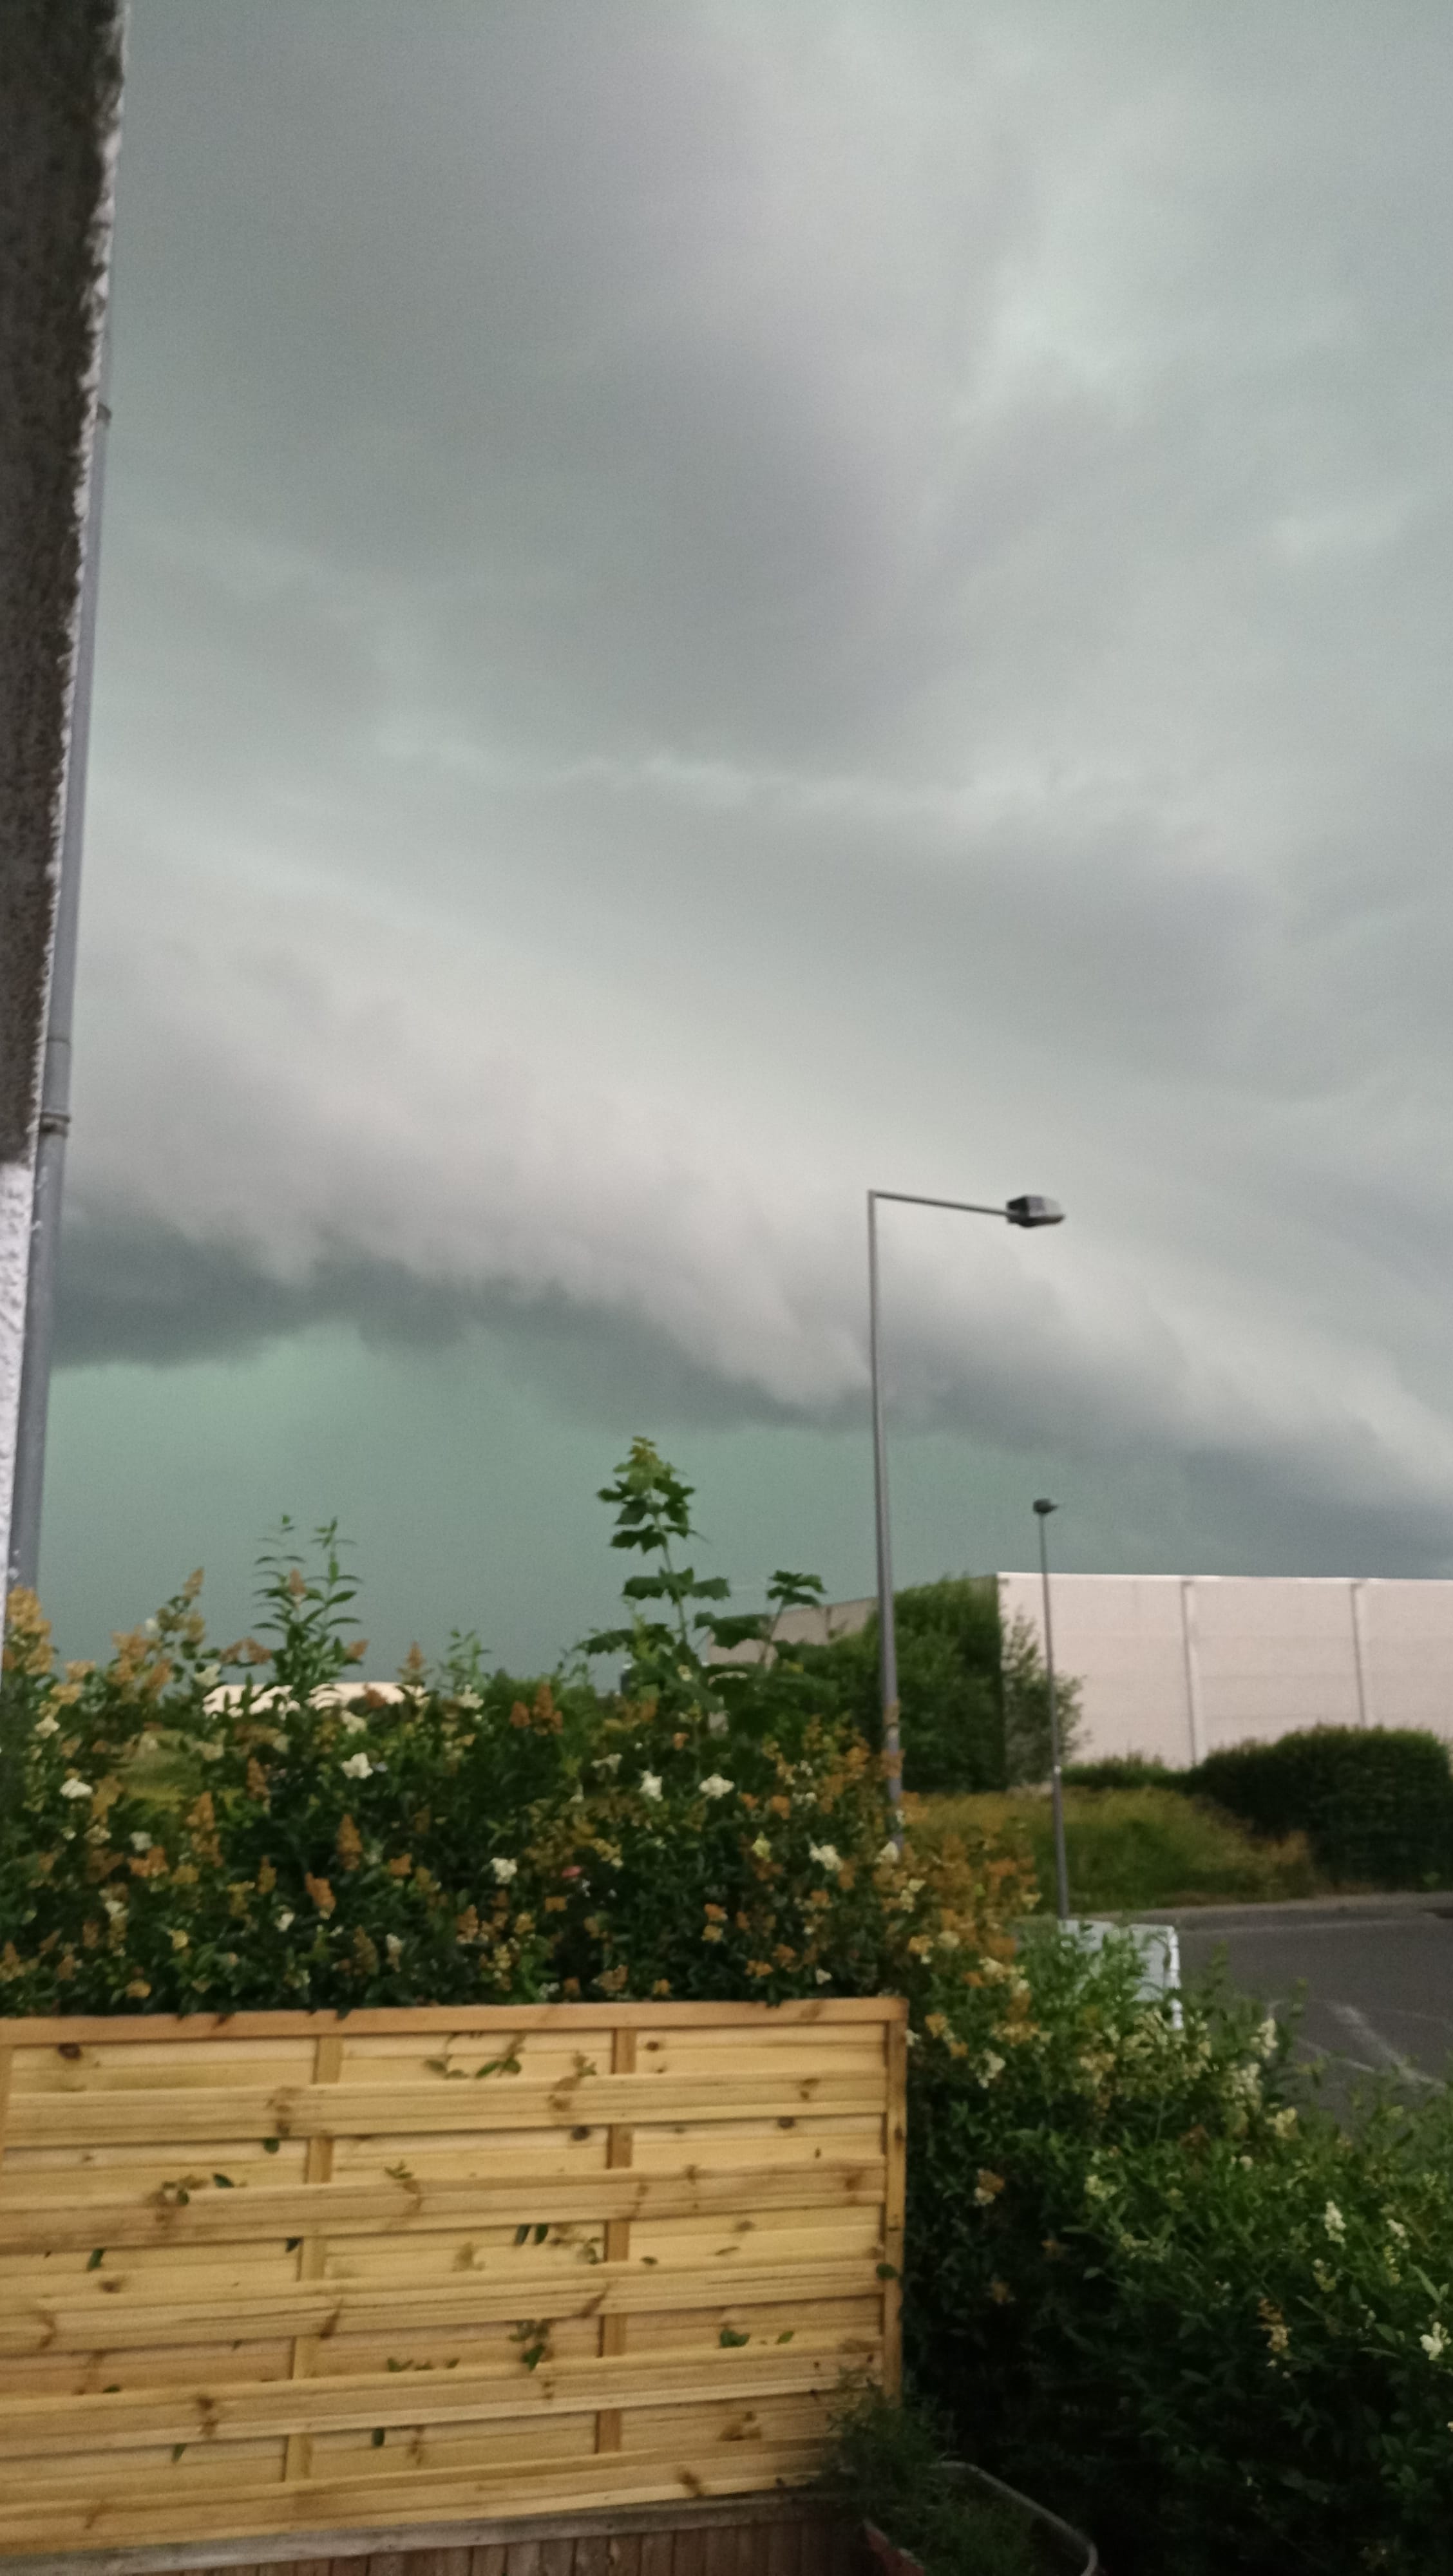 Le calme avant la tempête.. 
Supercellule orageuse arrivant à Reims par l'Ouest, juste avant de frapper la ville. - 16/06/2021 20:18 - Tristan Danisch